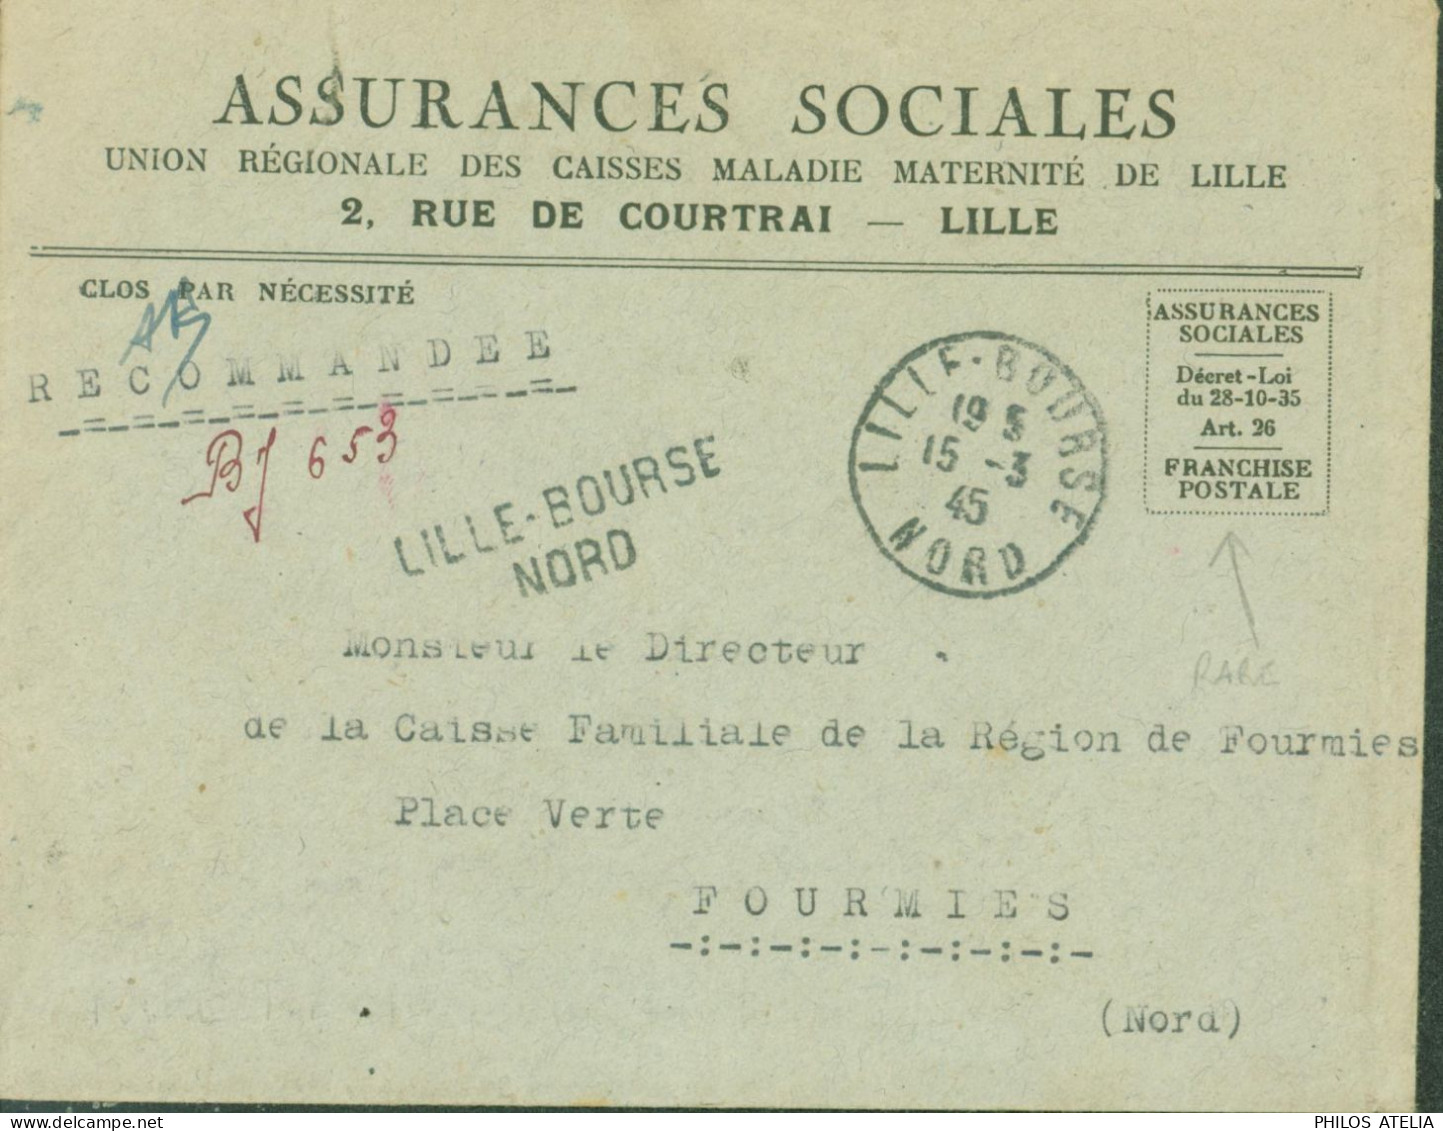 Guerre 40 Recommandé De Fortune BJ 653 Lille Bourse Nord Avec Franchise Postale Assurances Sociales CAD 15 3 45 - 2. Weltkrieg 1939-1945